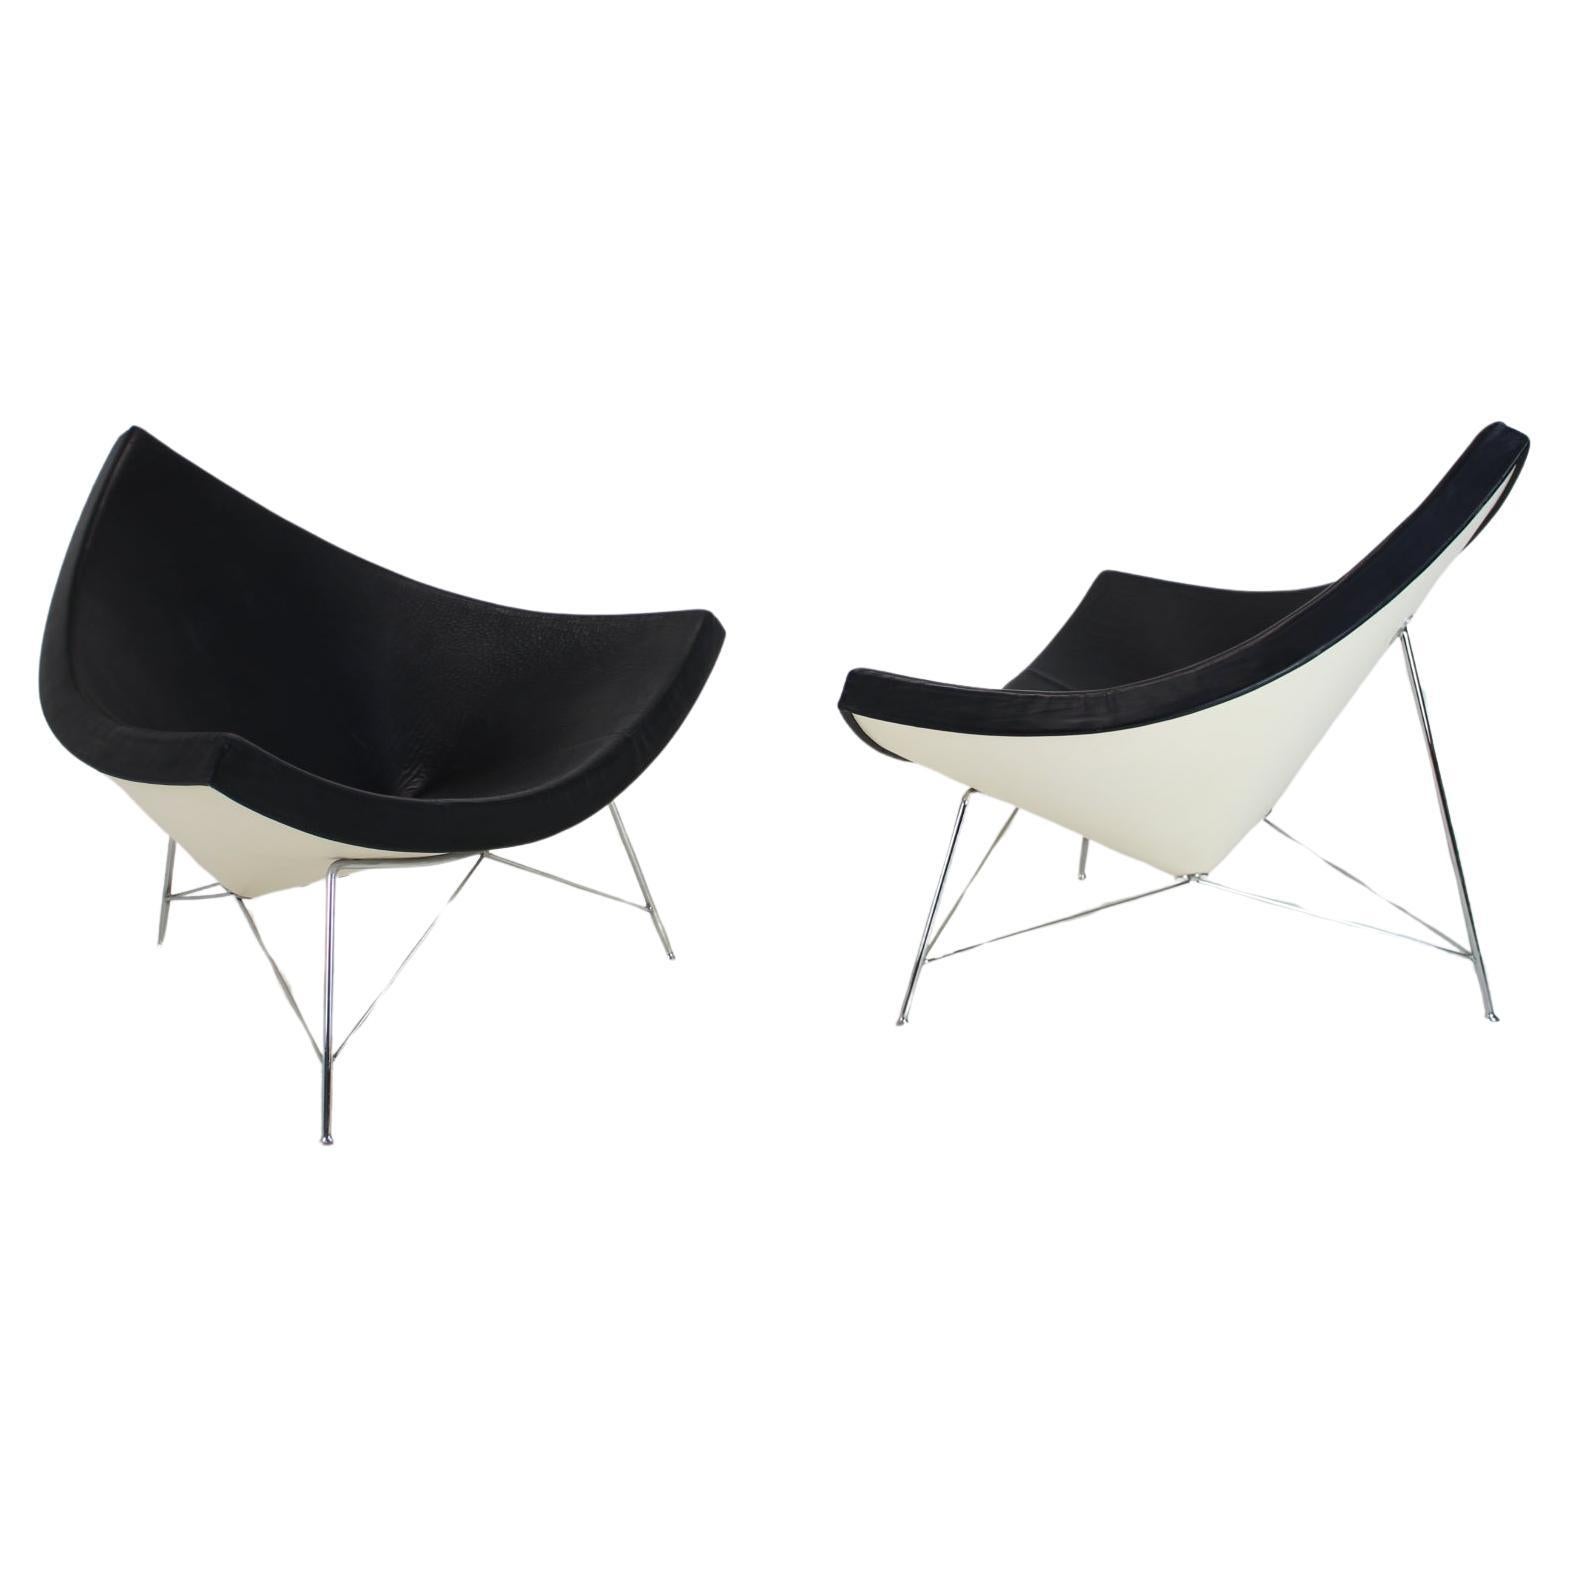 Ensemble de deux chaises originales George Nelson Coconut Chairs, Vitra